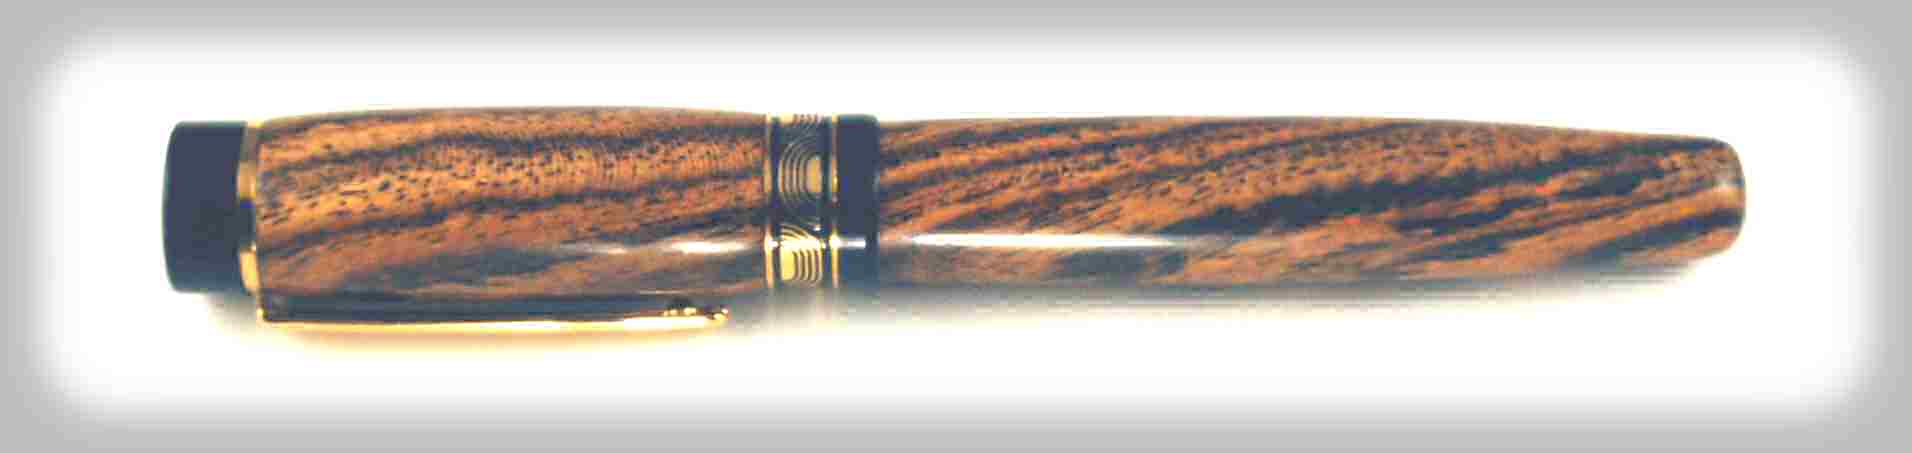 Bocote Fountain Pen